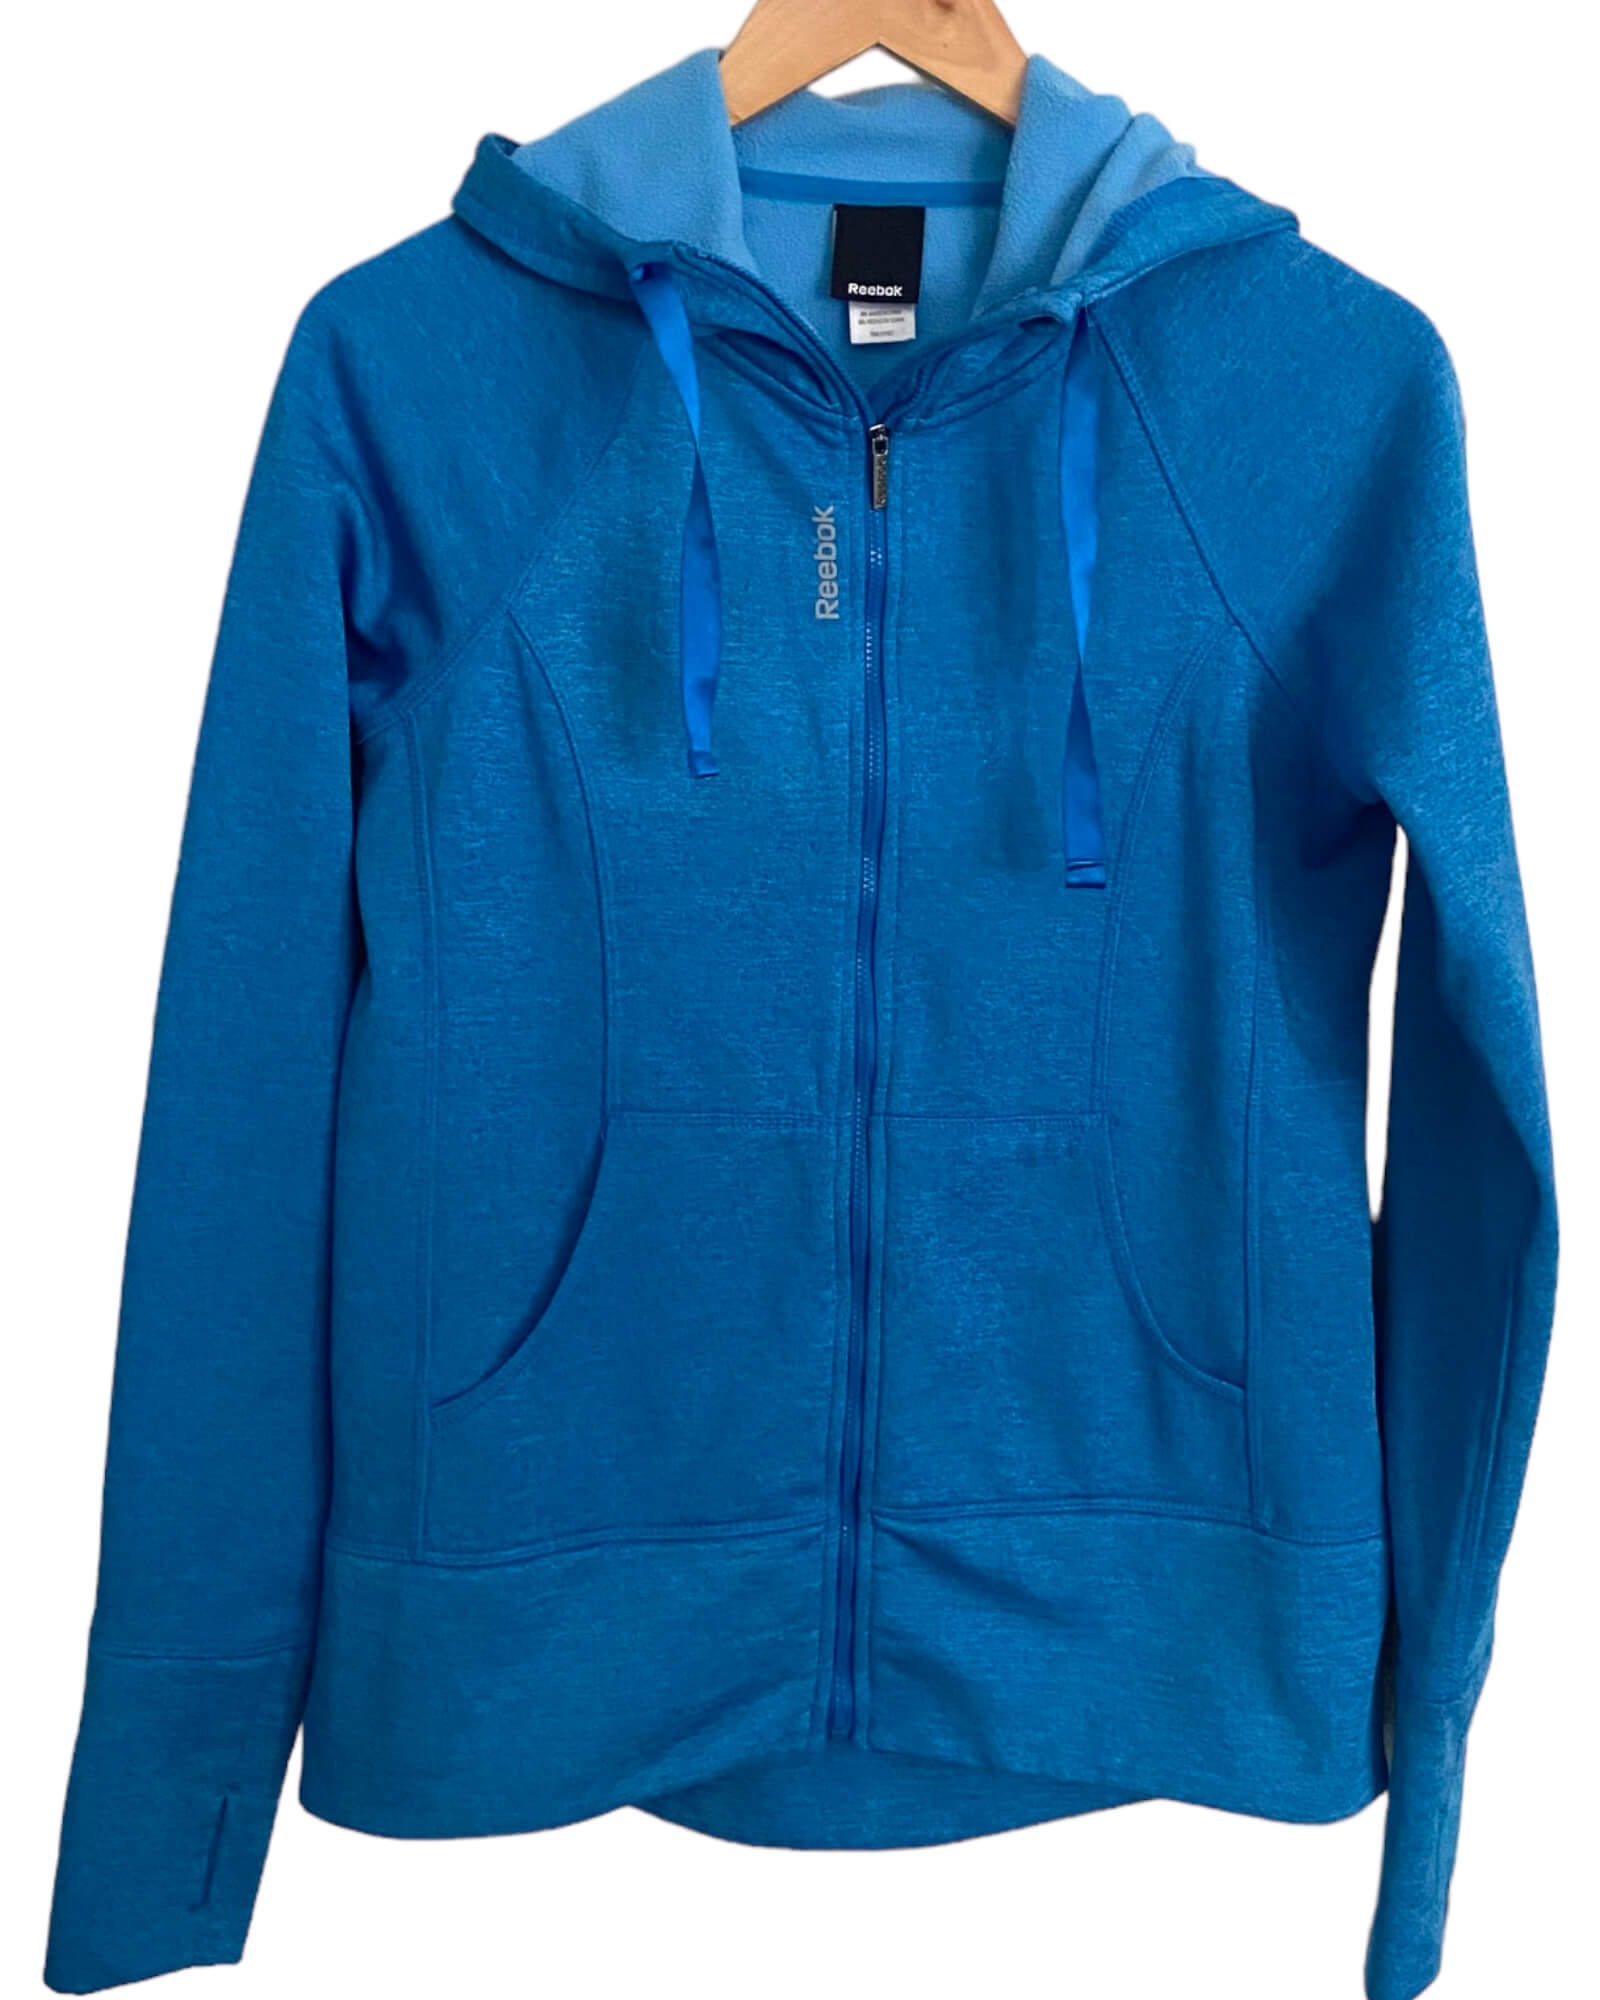 Warm Spring REEBOK azure blue hooded zipper jacket